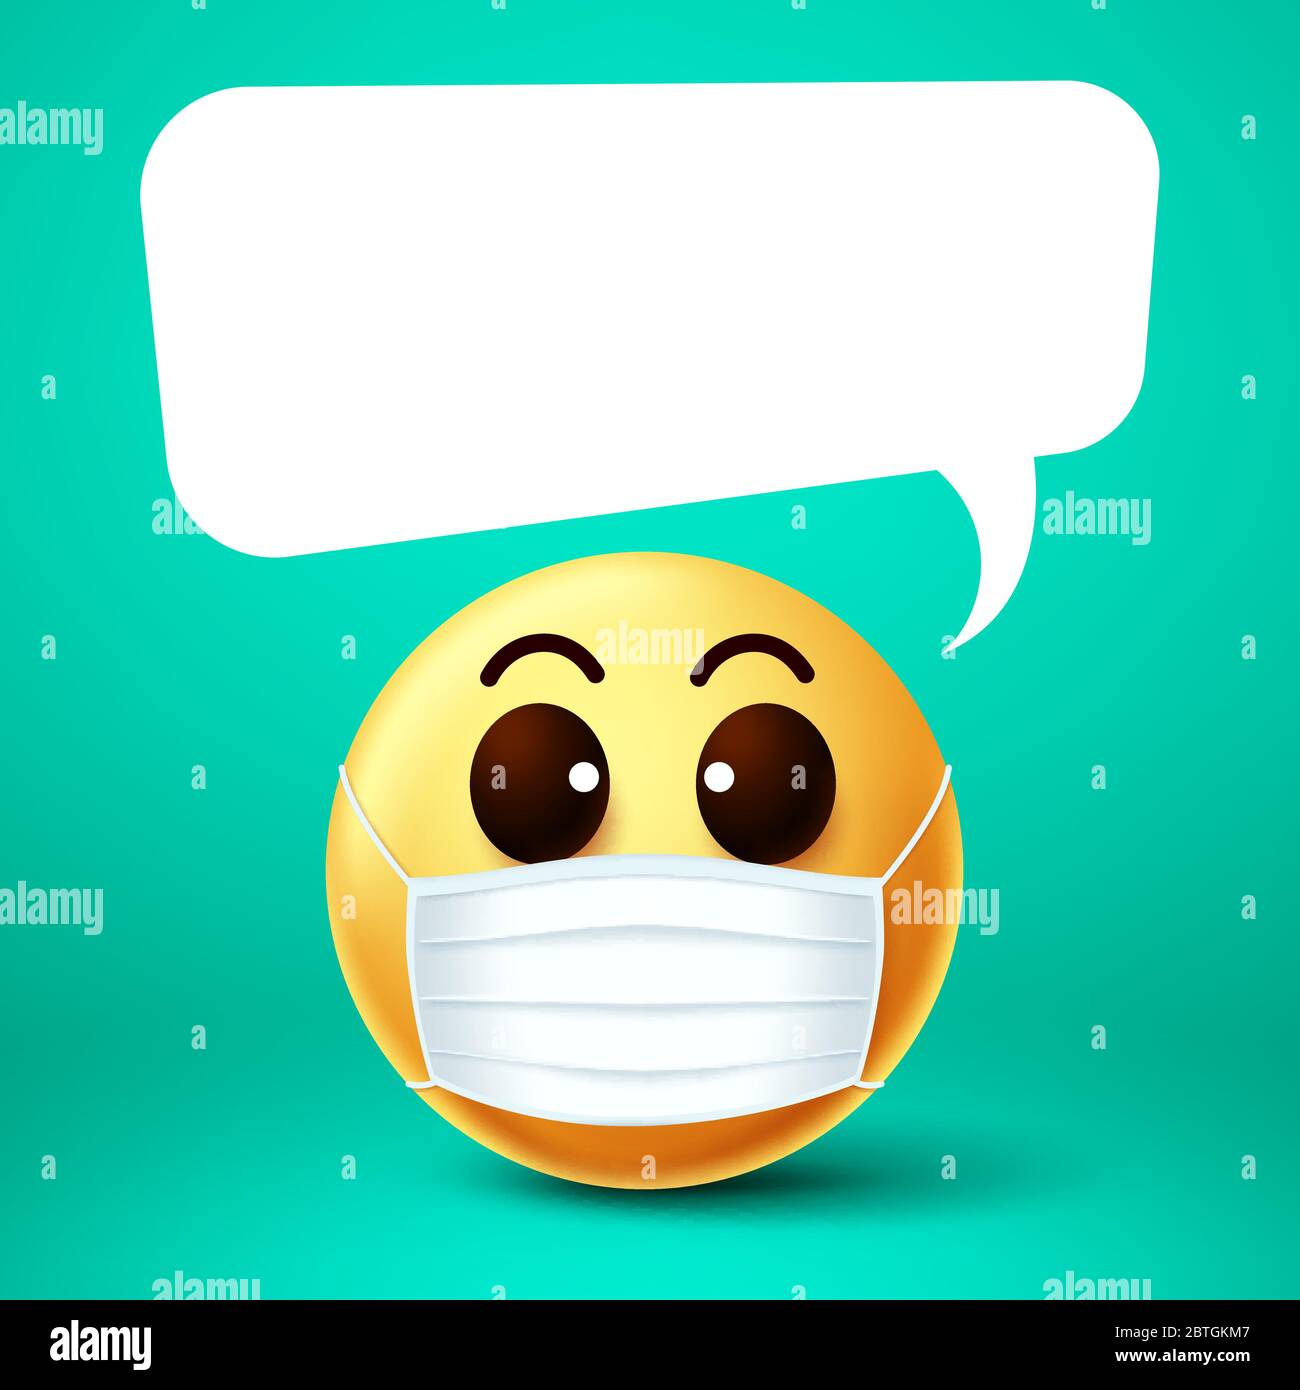 Emoji Smiley Gesichtsmaske Vektor-Vorlage. Emoji Smiley trägt Gesichtsmaske mit leeren weißen Sprechblase während des Sprechens für Covid-19 Coronavirus Ausbruch. Stock Vektor